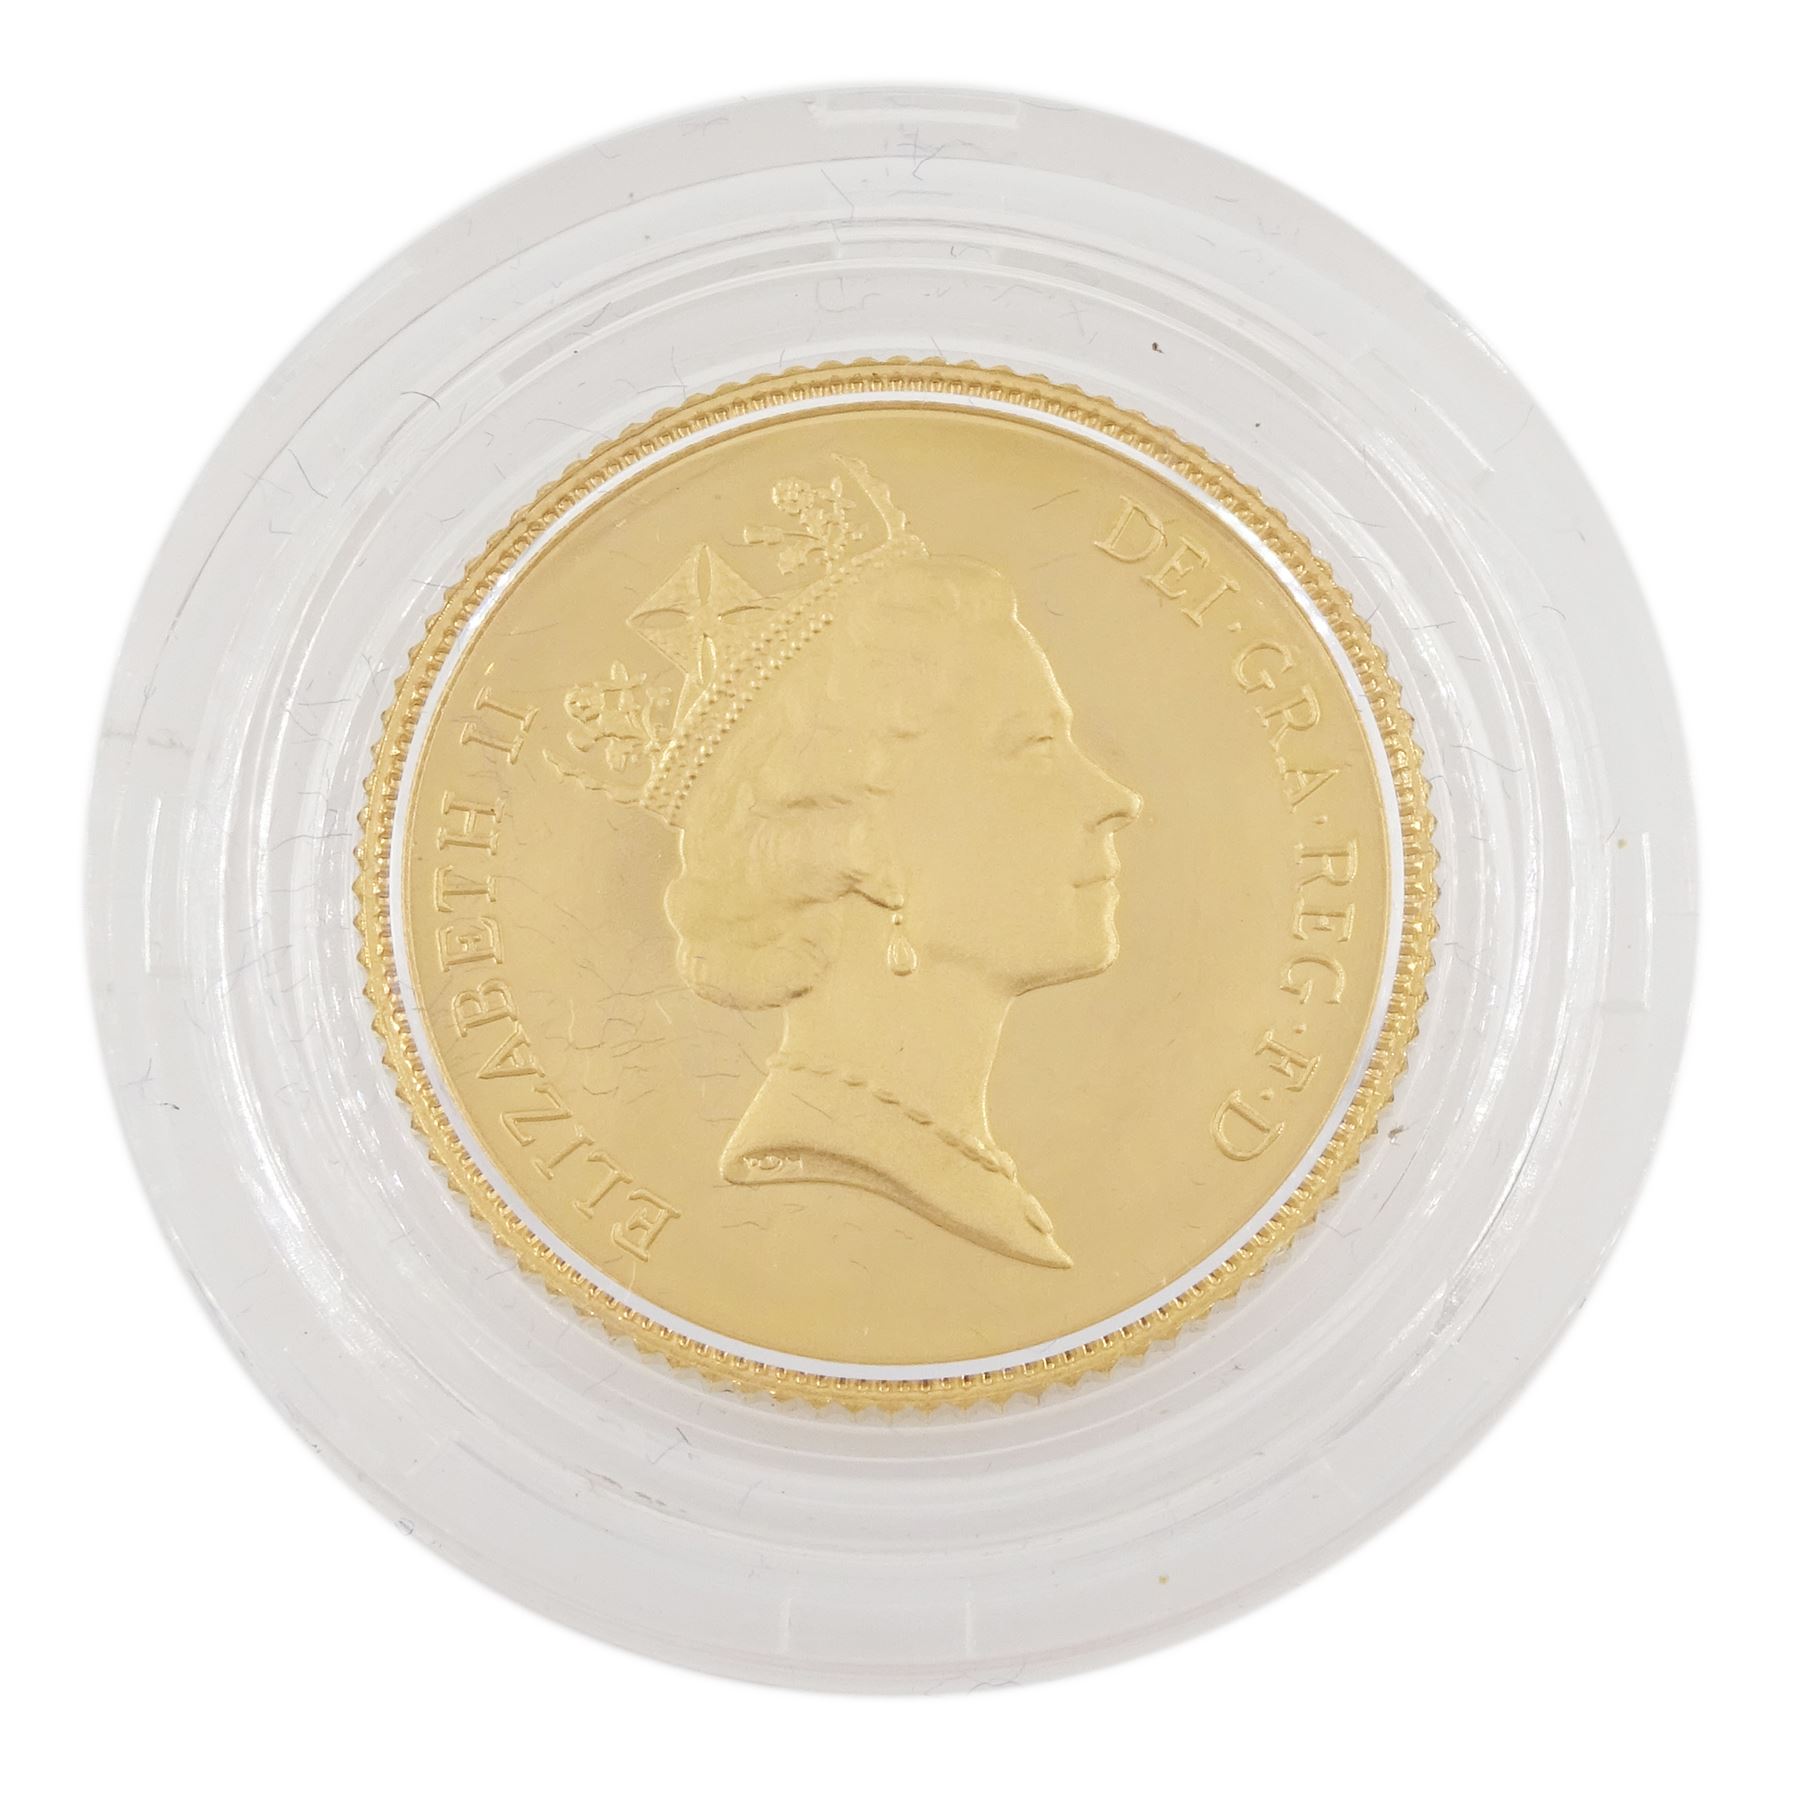 Queen Elizabeth II 1985 gold proof half sovereign coin